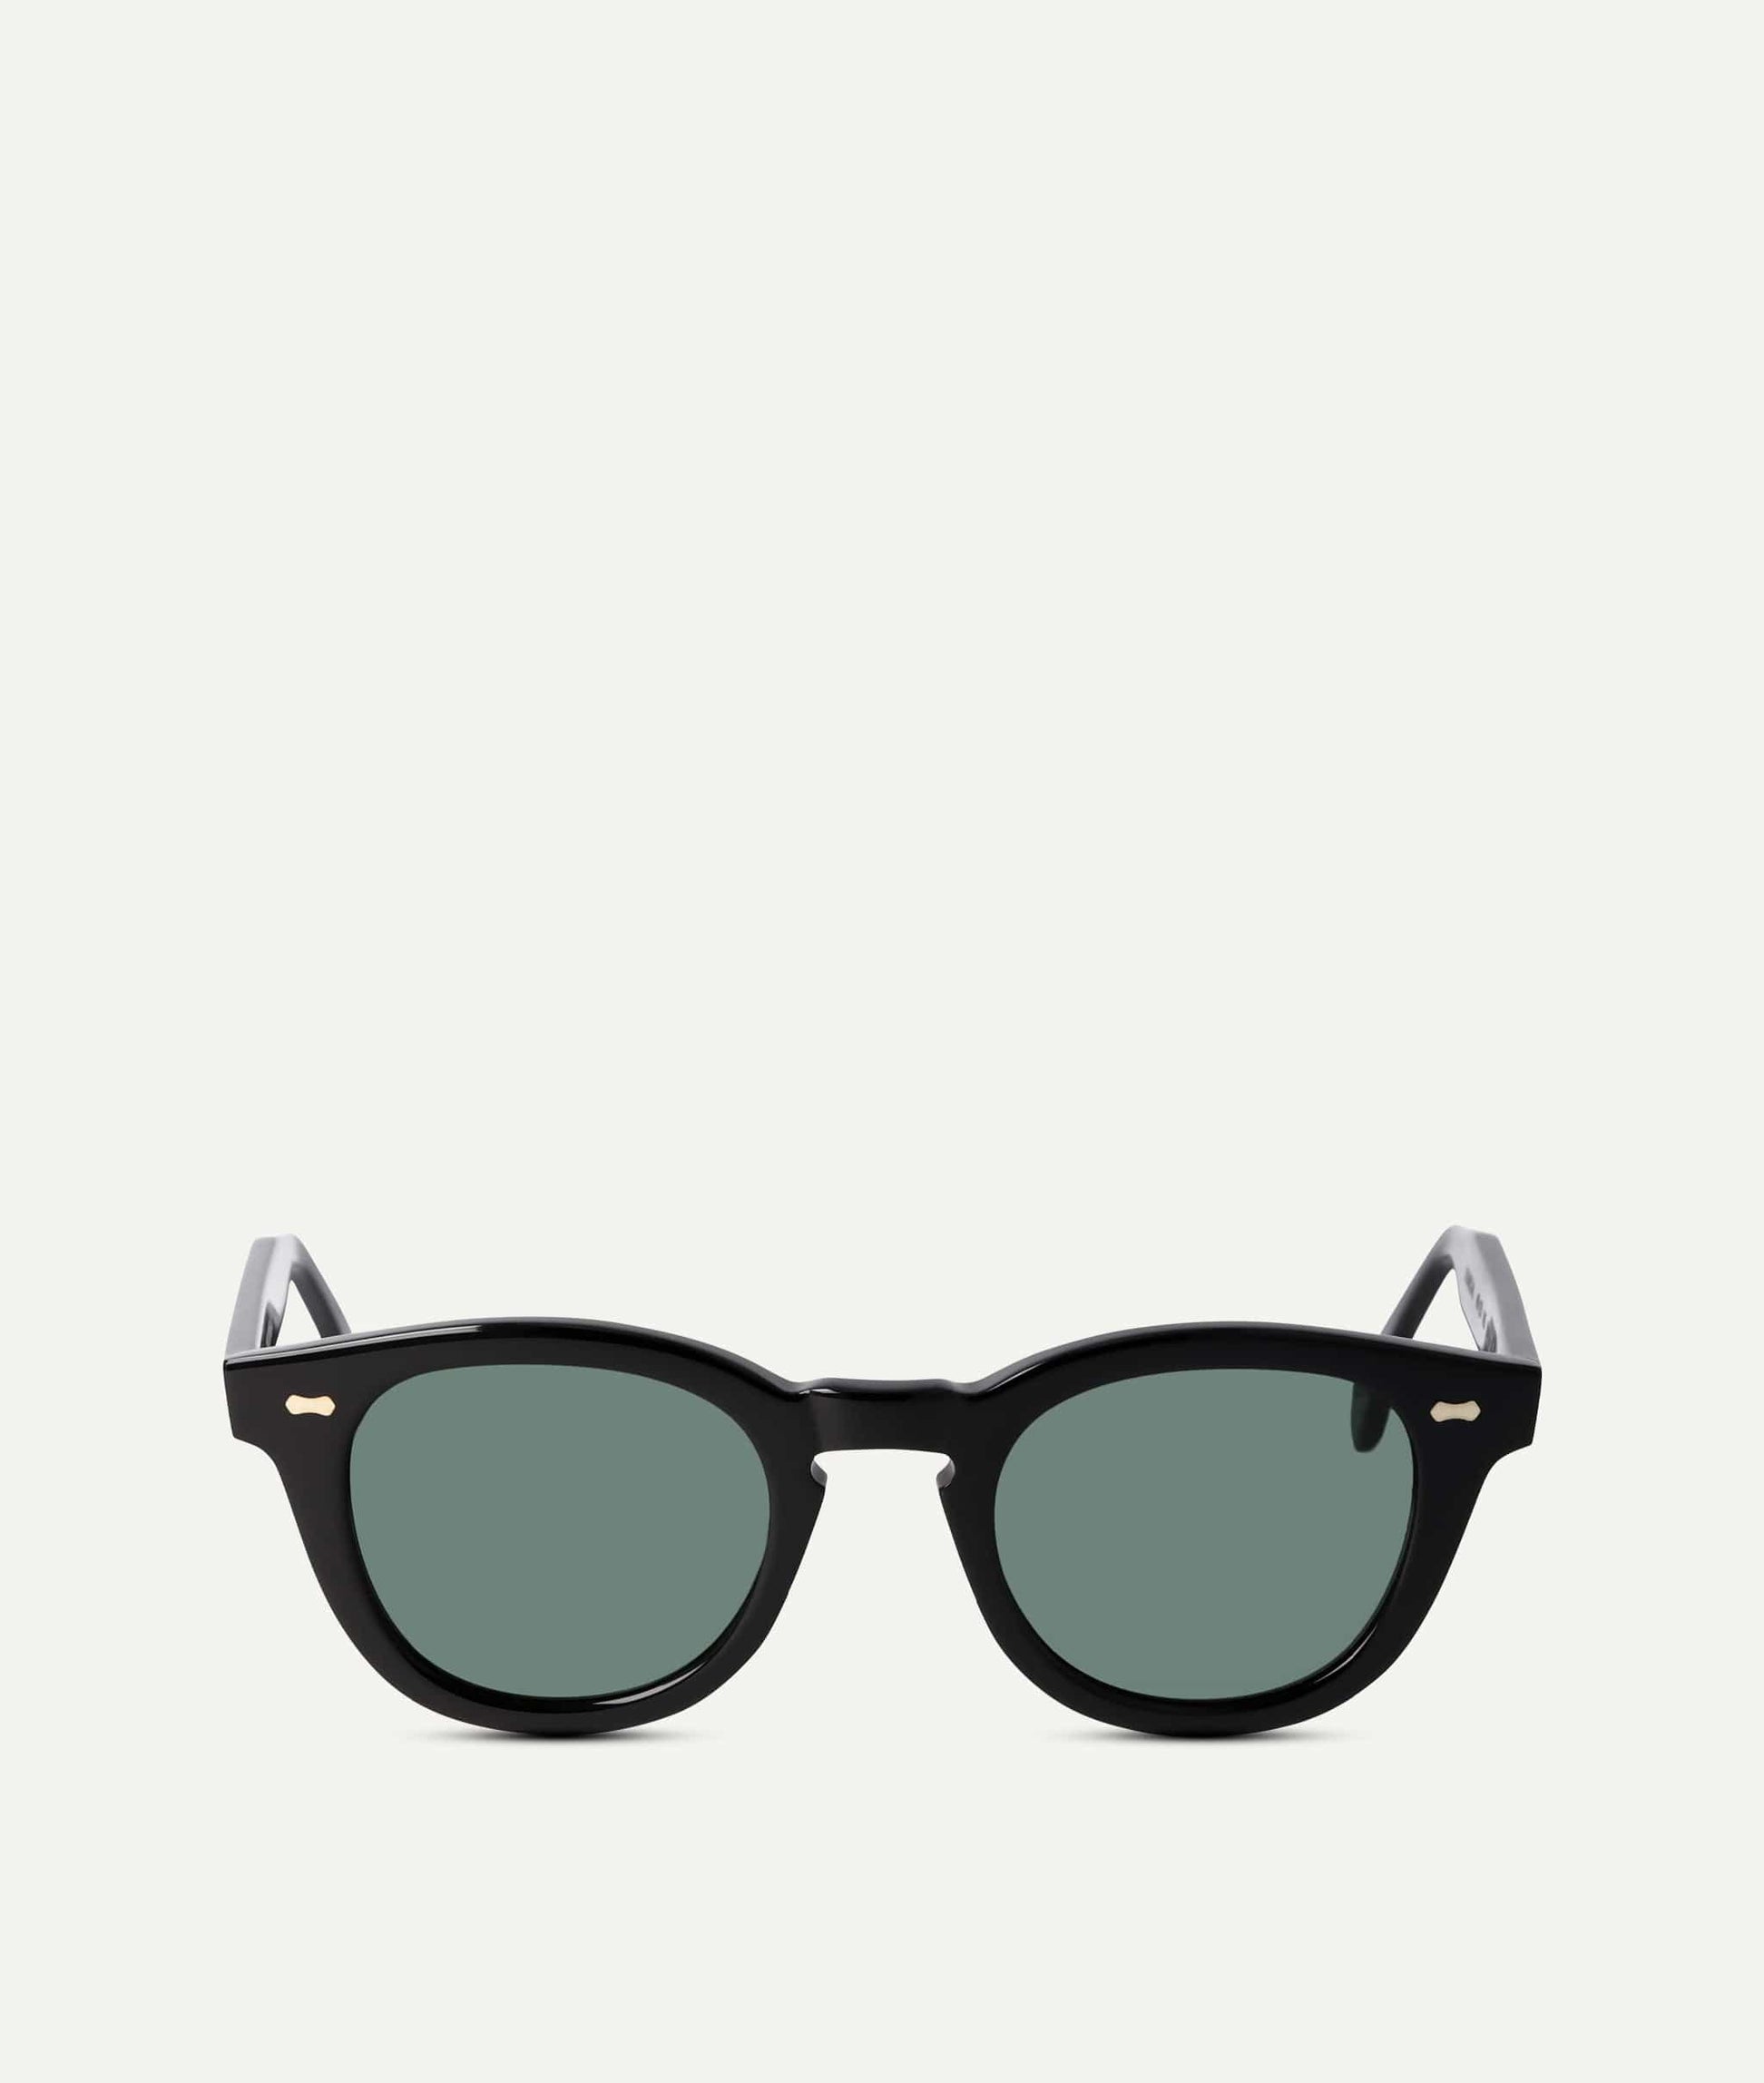 Herrensonnenbrillen | Premium-Sonnenbrillen ETIQL Männer für 